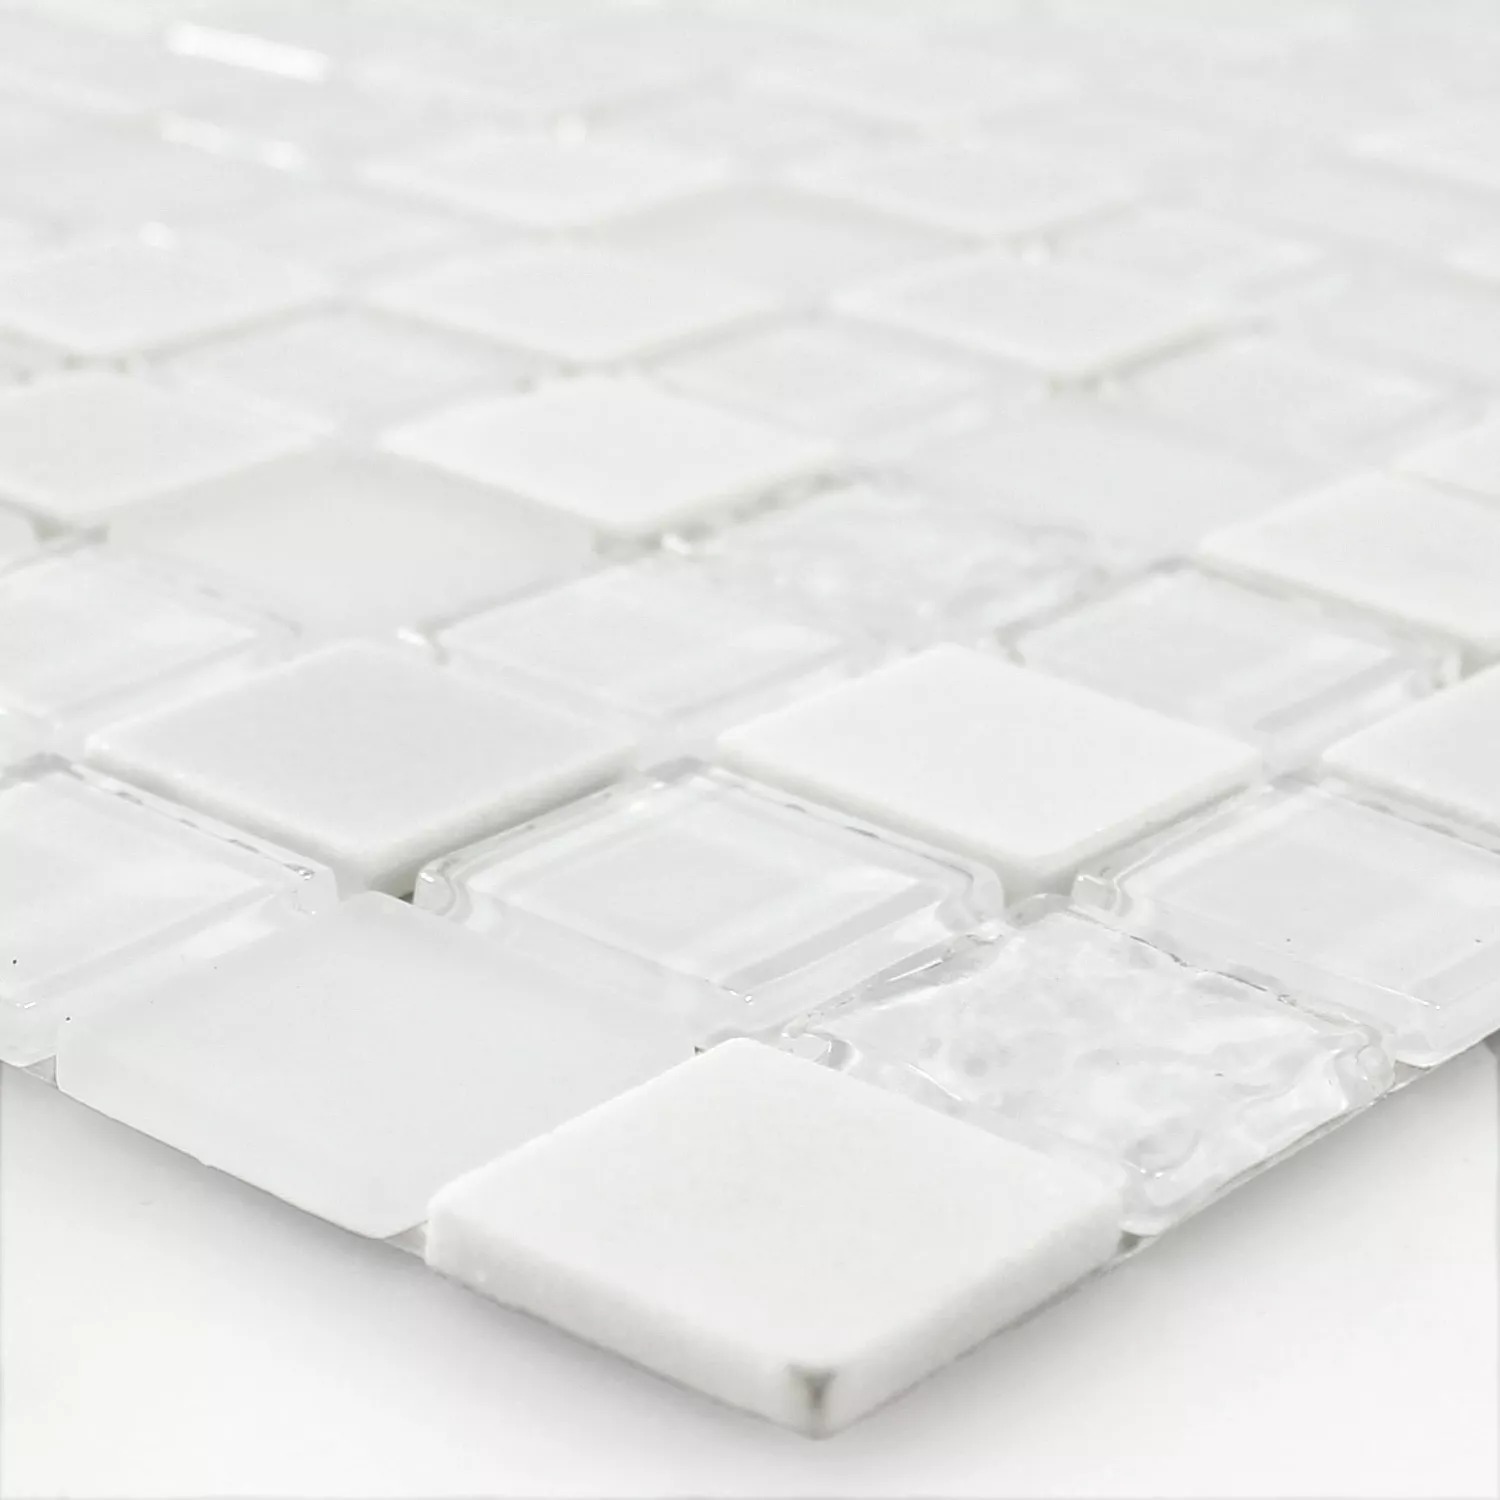 Muster von Selbstklebende Mosaik Naturstein Glas Mix Weiss